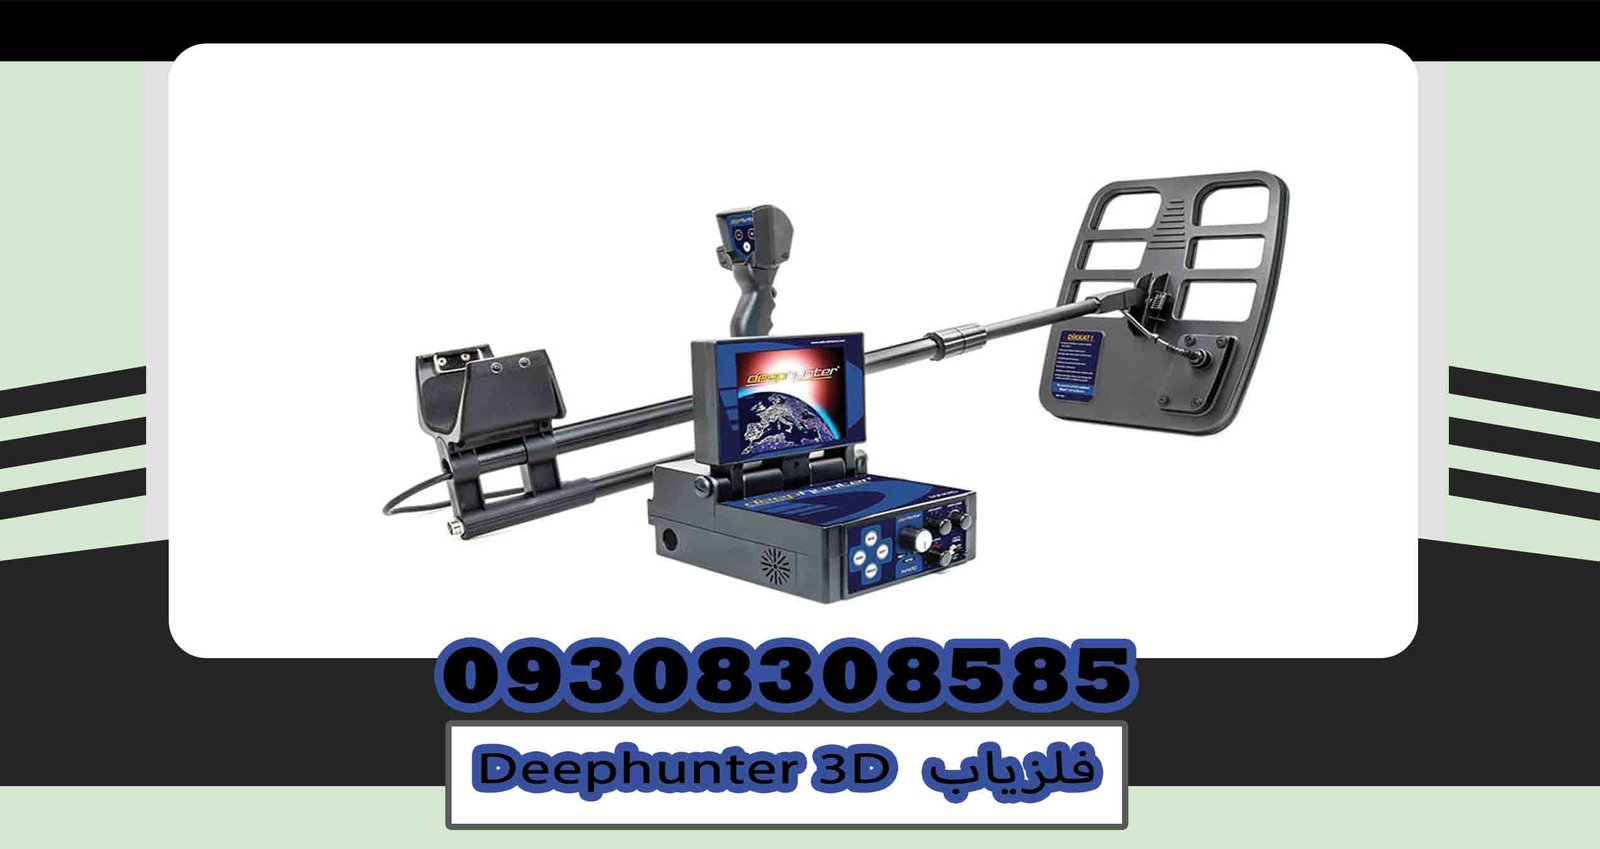 Deephunter 3D